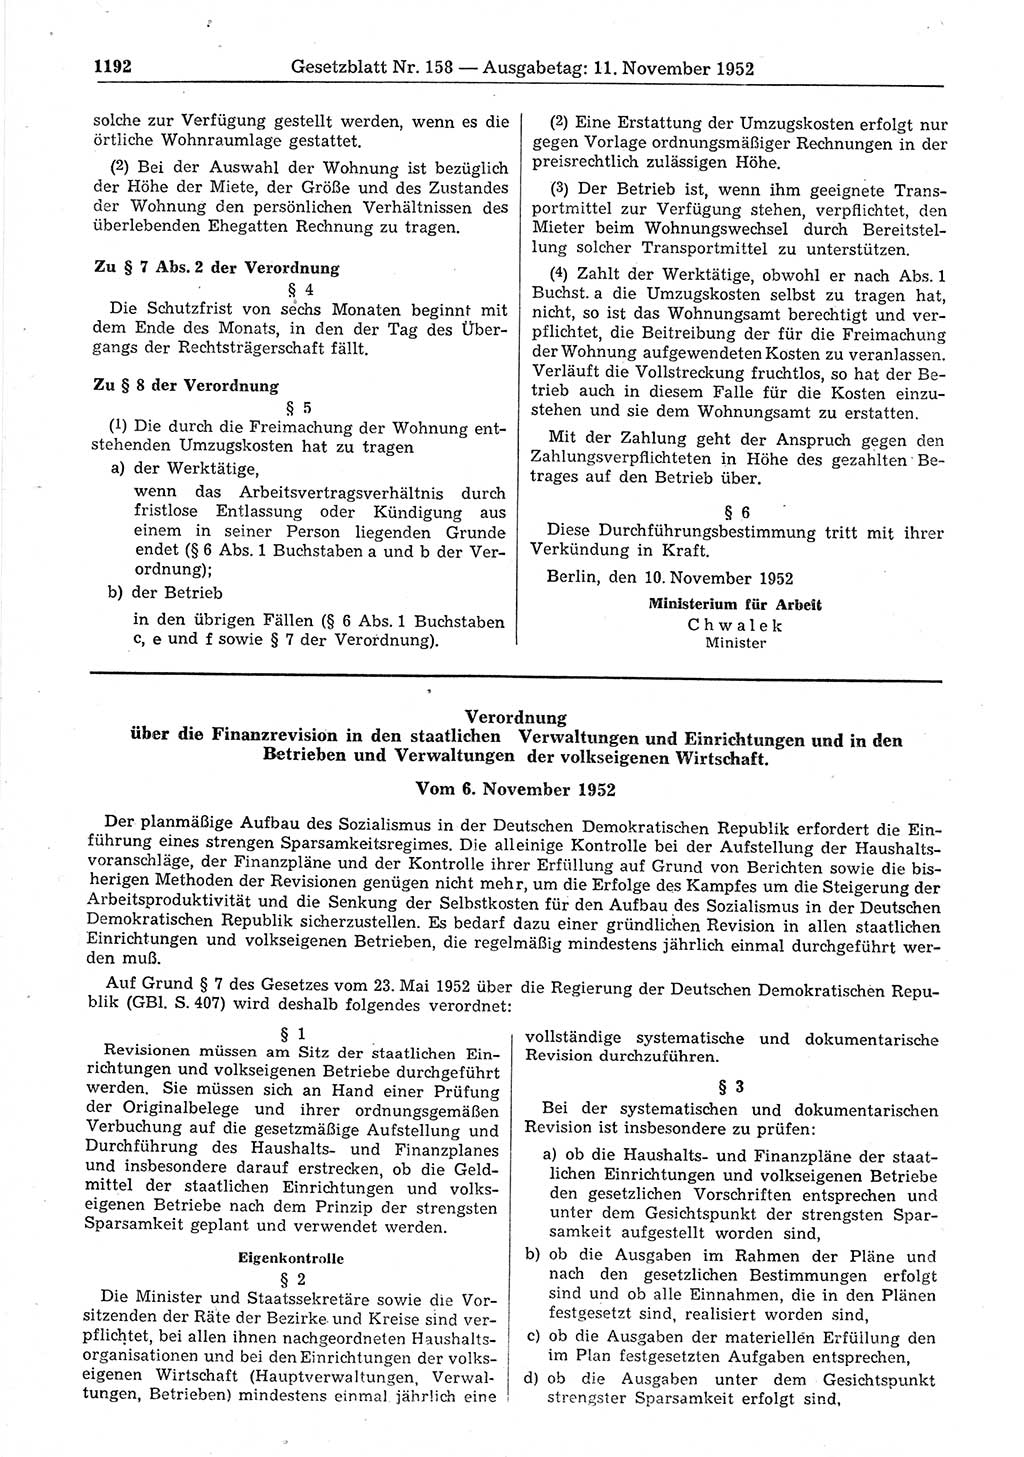 Gesetzblatt (GBl.) der Deutschen Demokratischen Republik (DDR) 1952, Seite 1192 (GBl. DDR 1952, S. 1192)